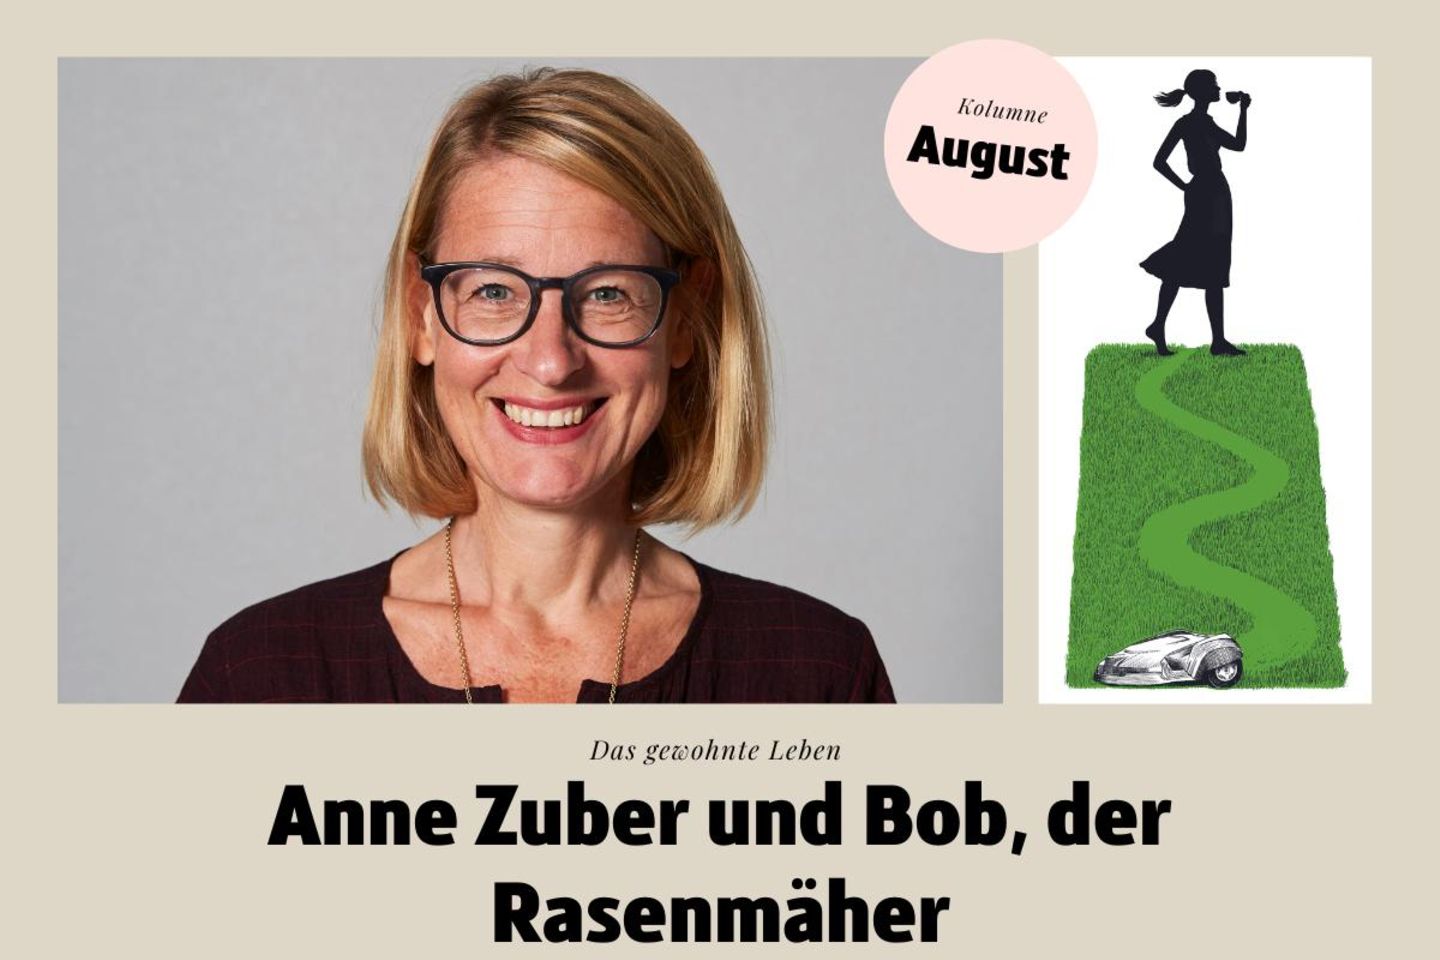 Kolumne: Wie Anne Zuber sich mit Bob, dem Rasenmäher anfreudet